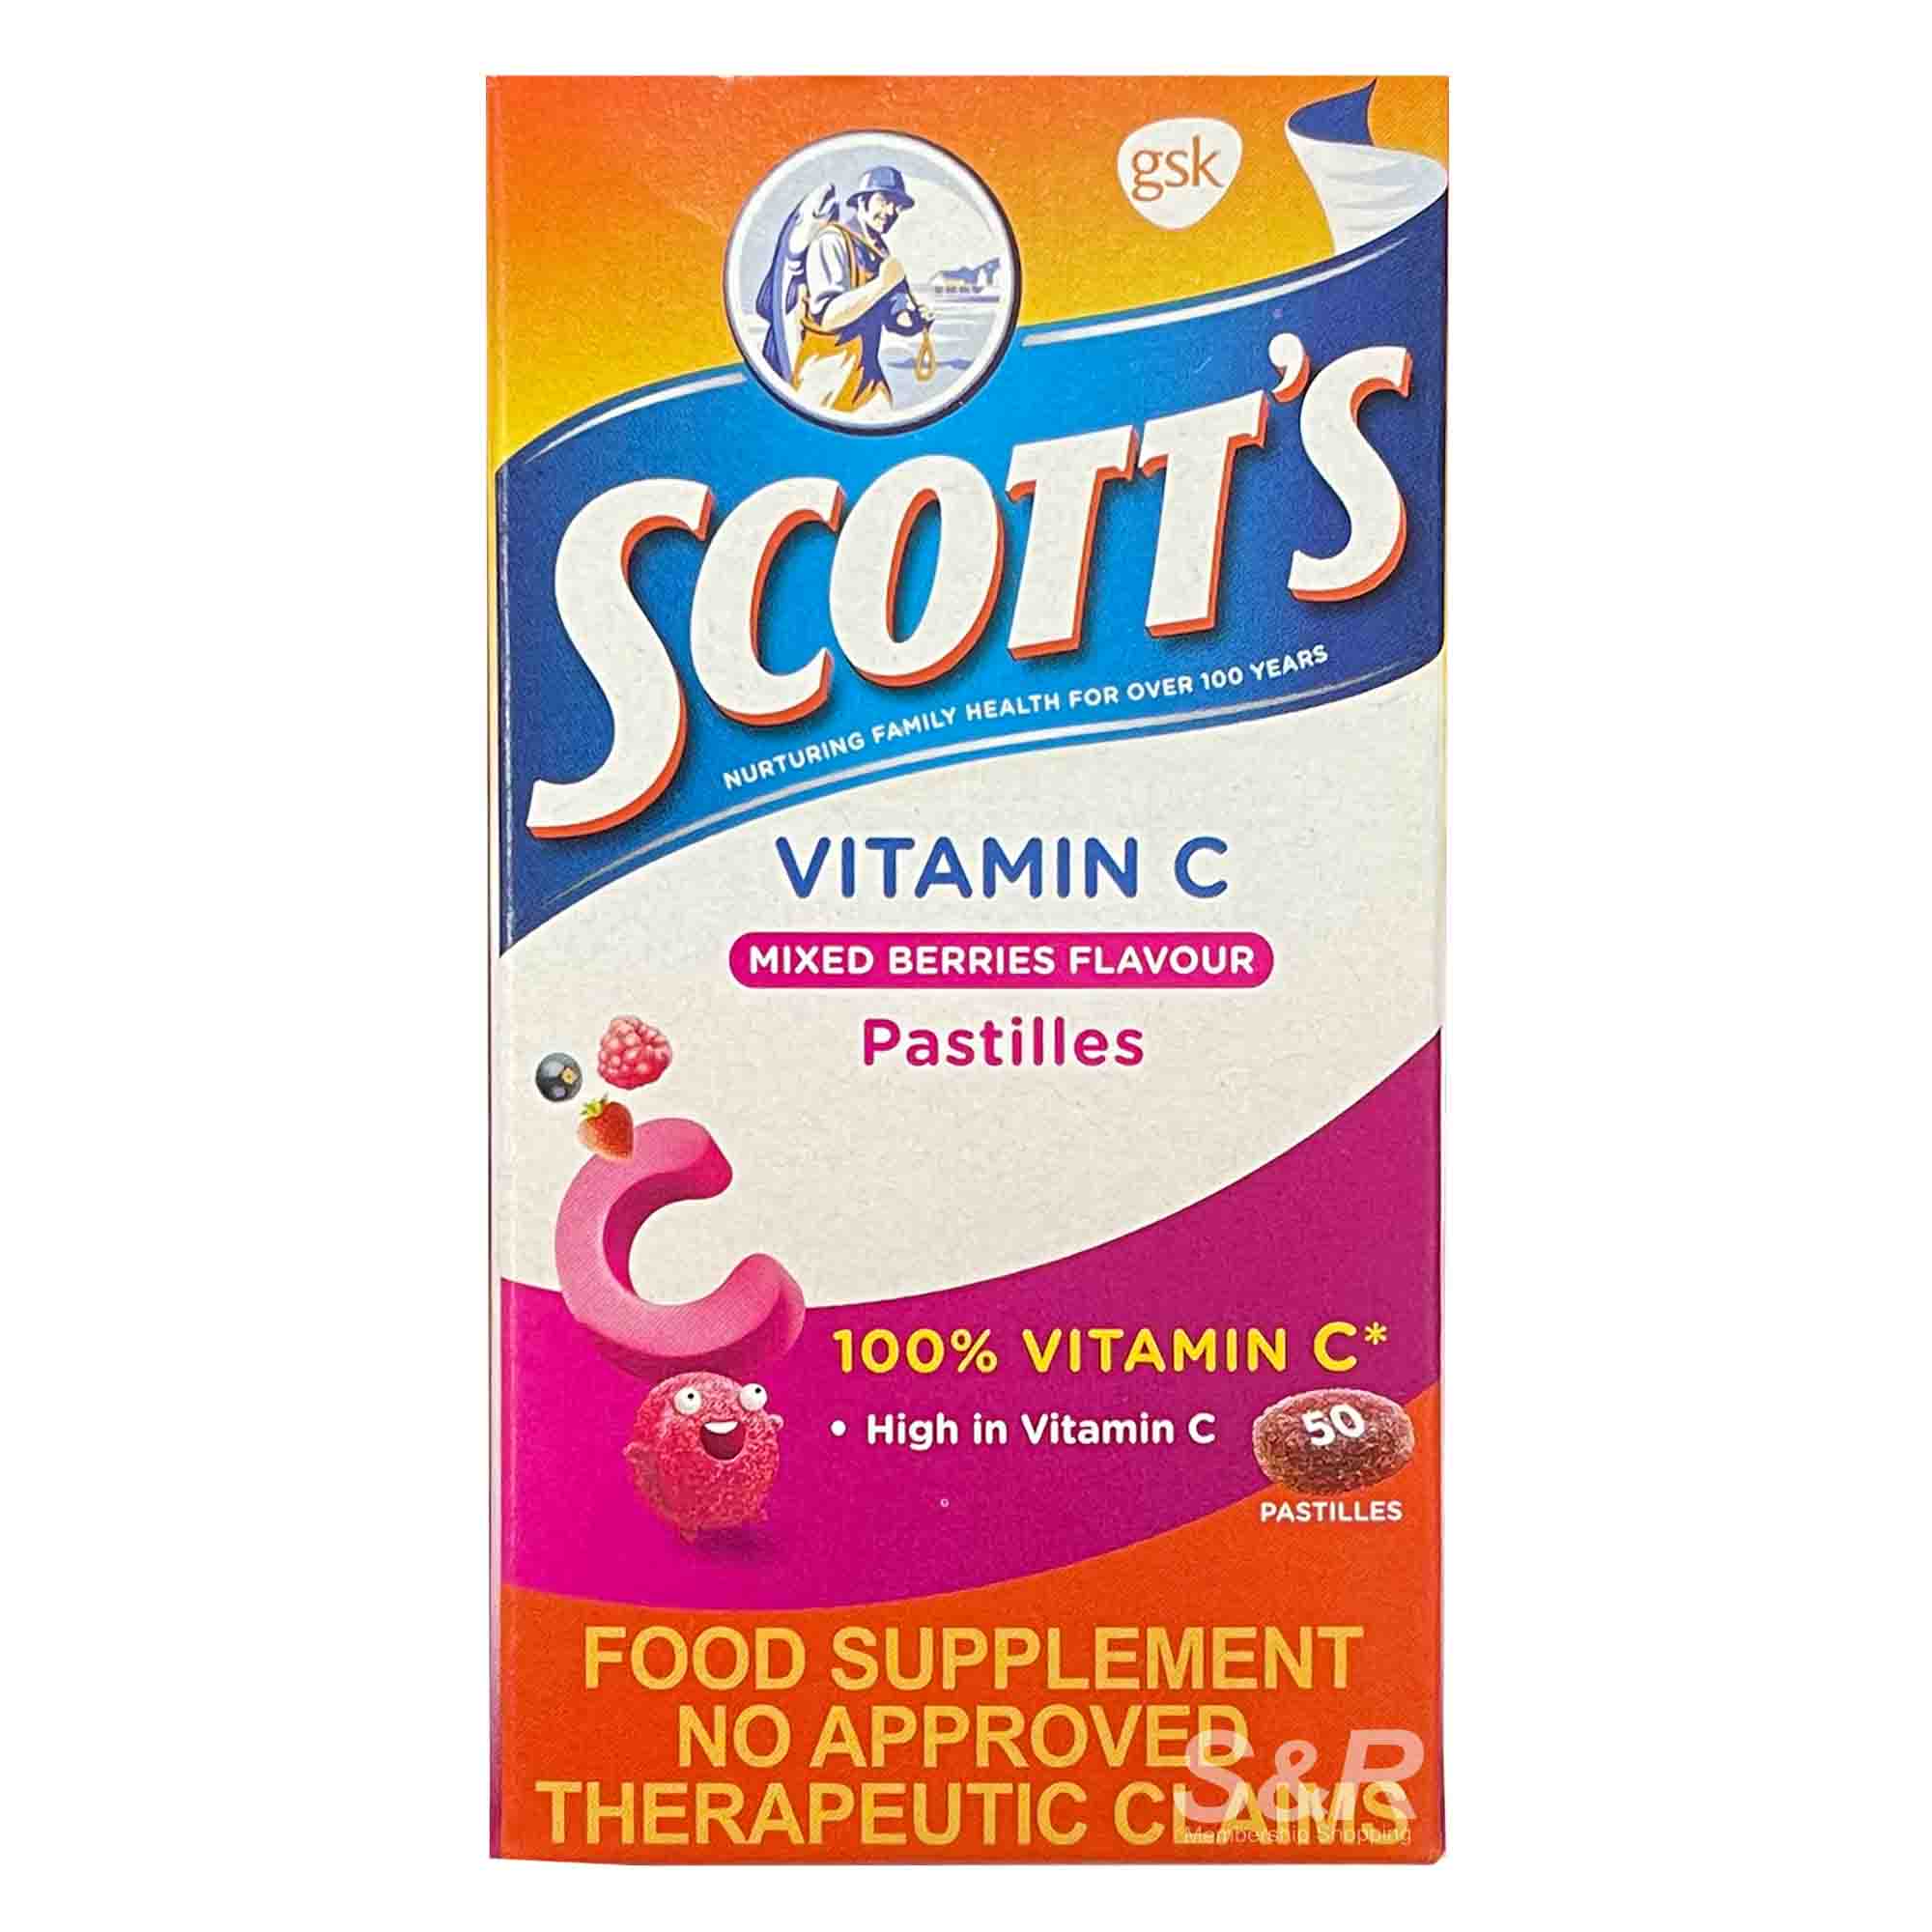 Scott's Vitamin C Mixed Berries Pastilles Food Supplement 50pcs